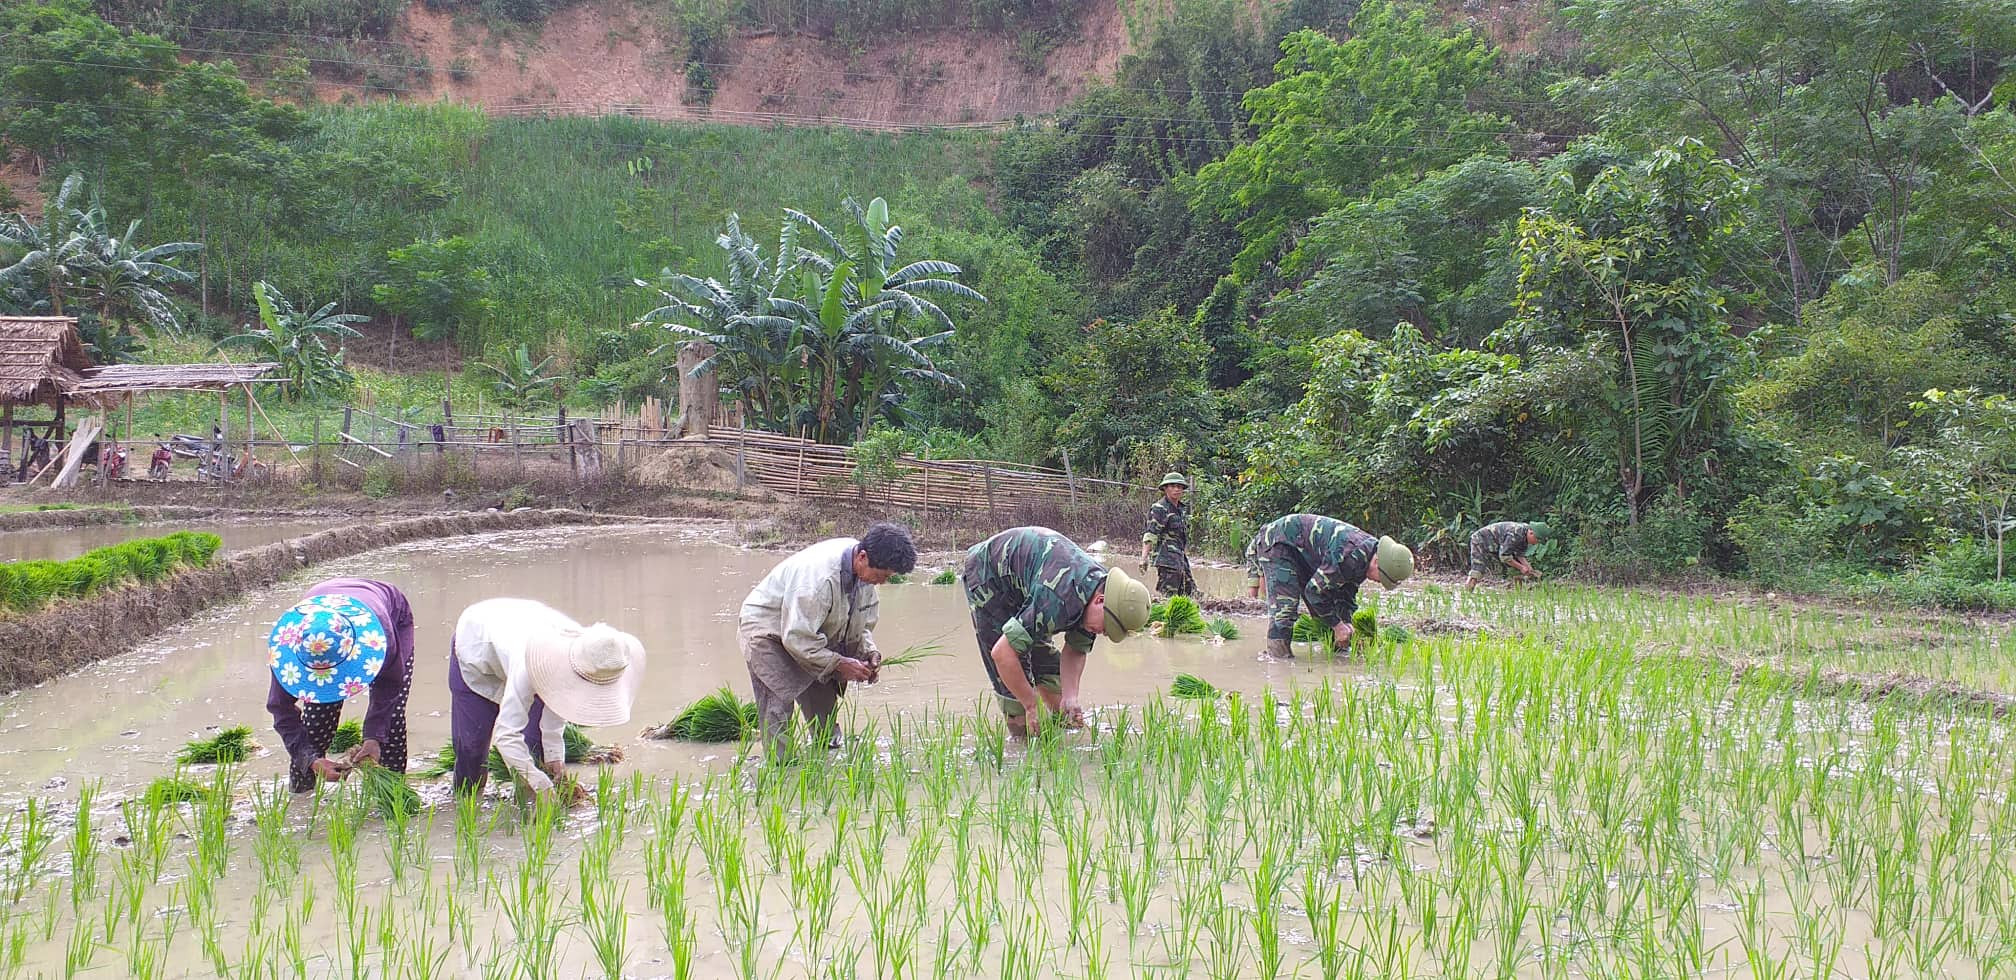 Bộ đội Biên phòng tỉnh Nghệ An giúp người dân khu vực biên giới trồng lúa nước. Ảnh: Hải Thượng